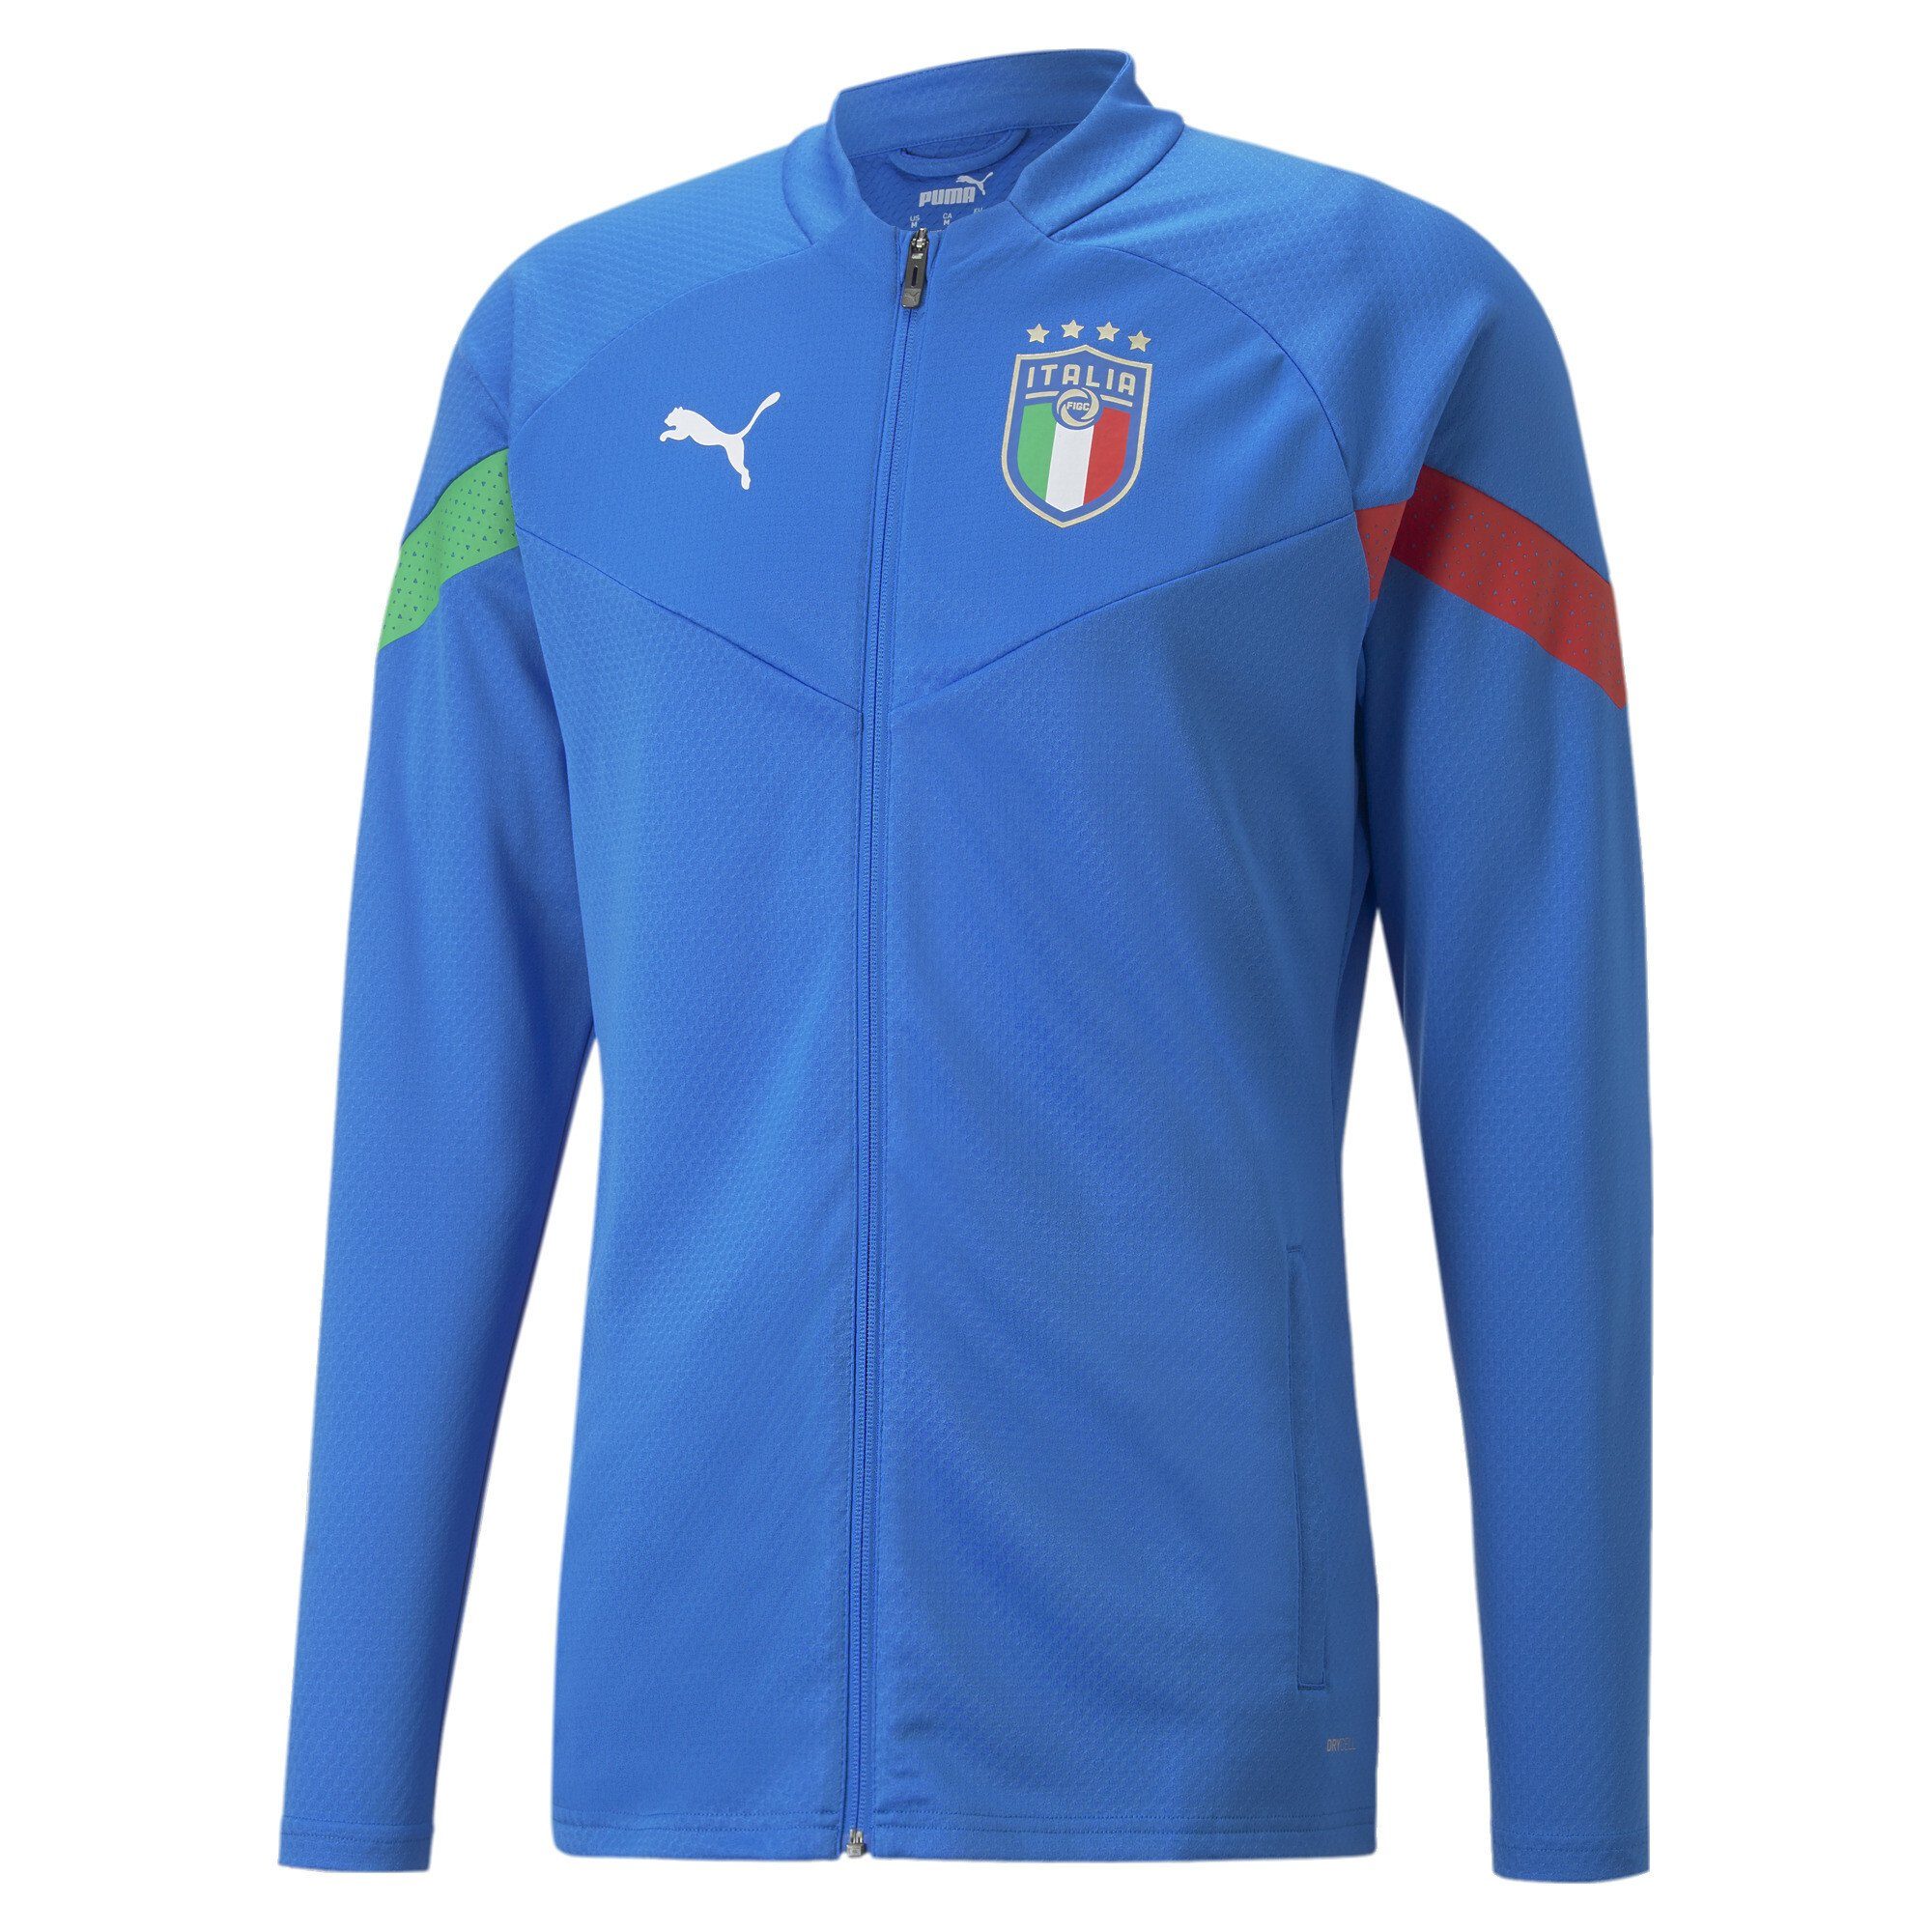 PUMA Sweatjacke Italien Fußballspieler Trainingsjacke Herren